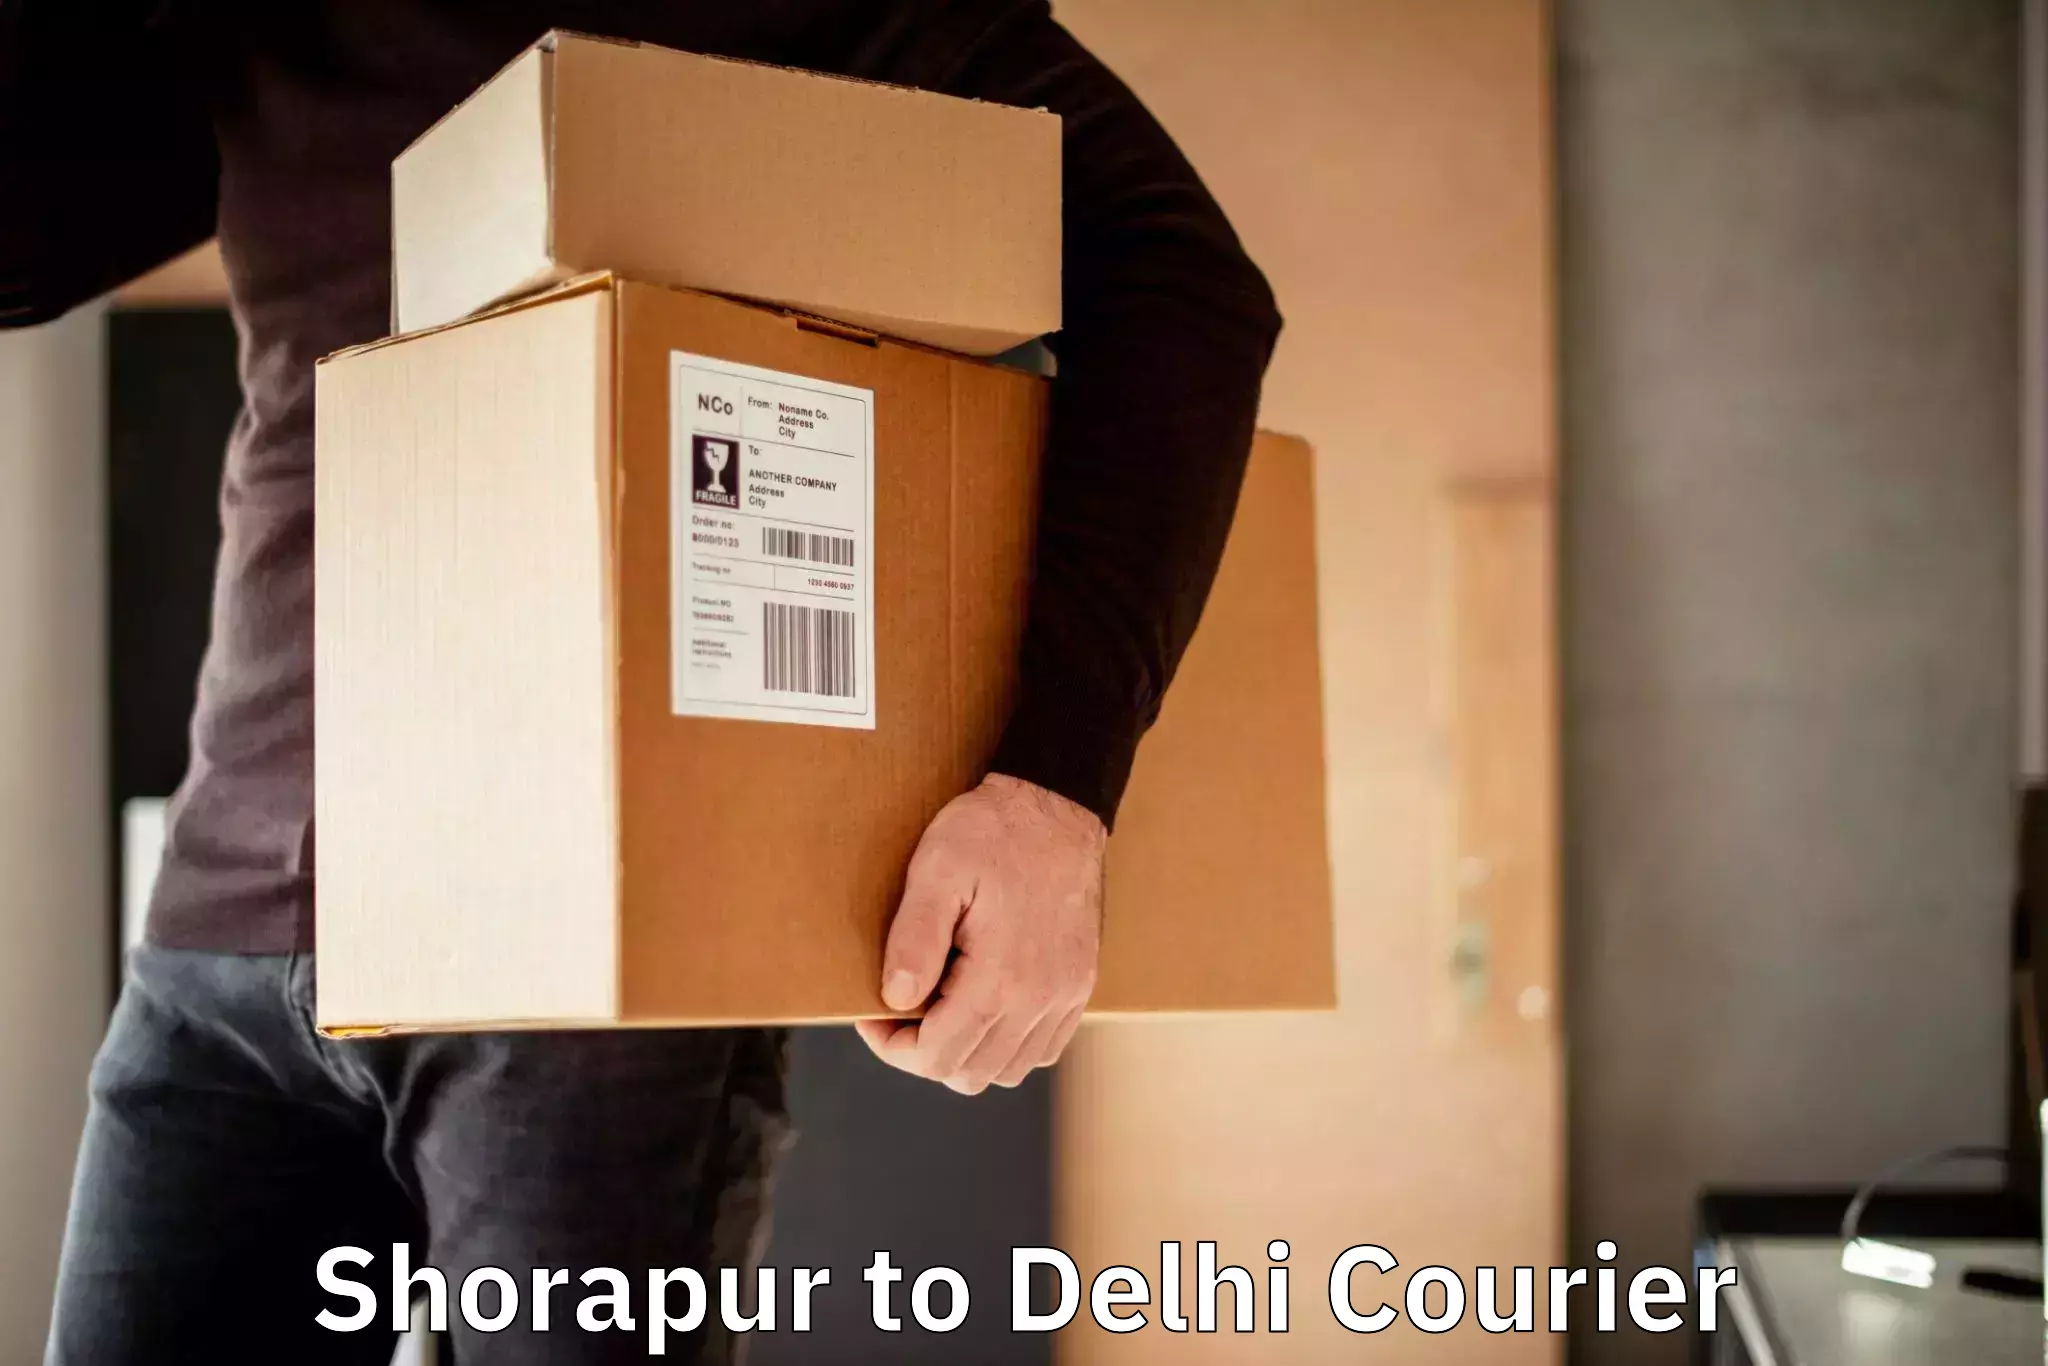 Speedy delivery service Shorapur to East Delhi